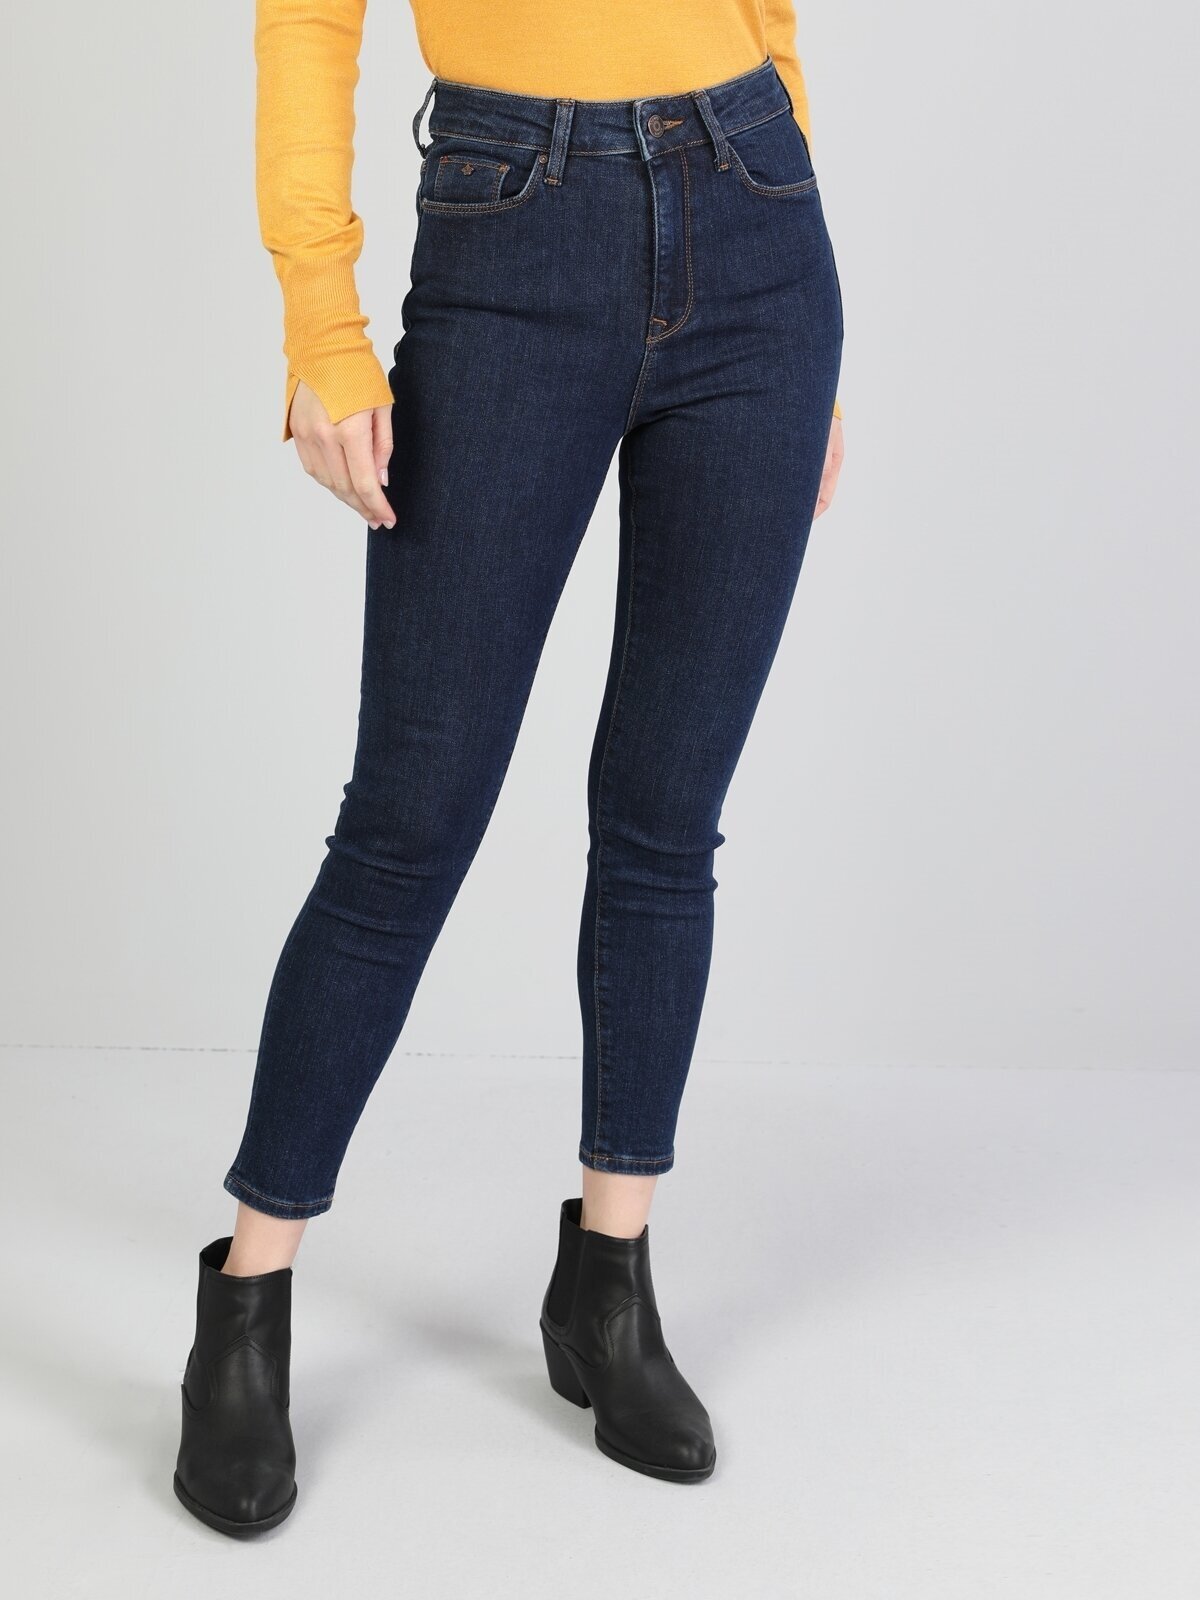 Colins 760 Dıana Yüksek Bel Dar Paça Super Slim Fit Mavi Kadın Jean Pantolon. 1